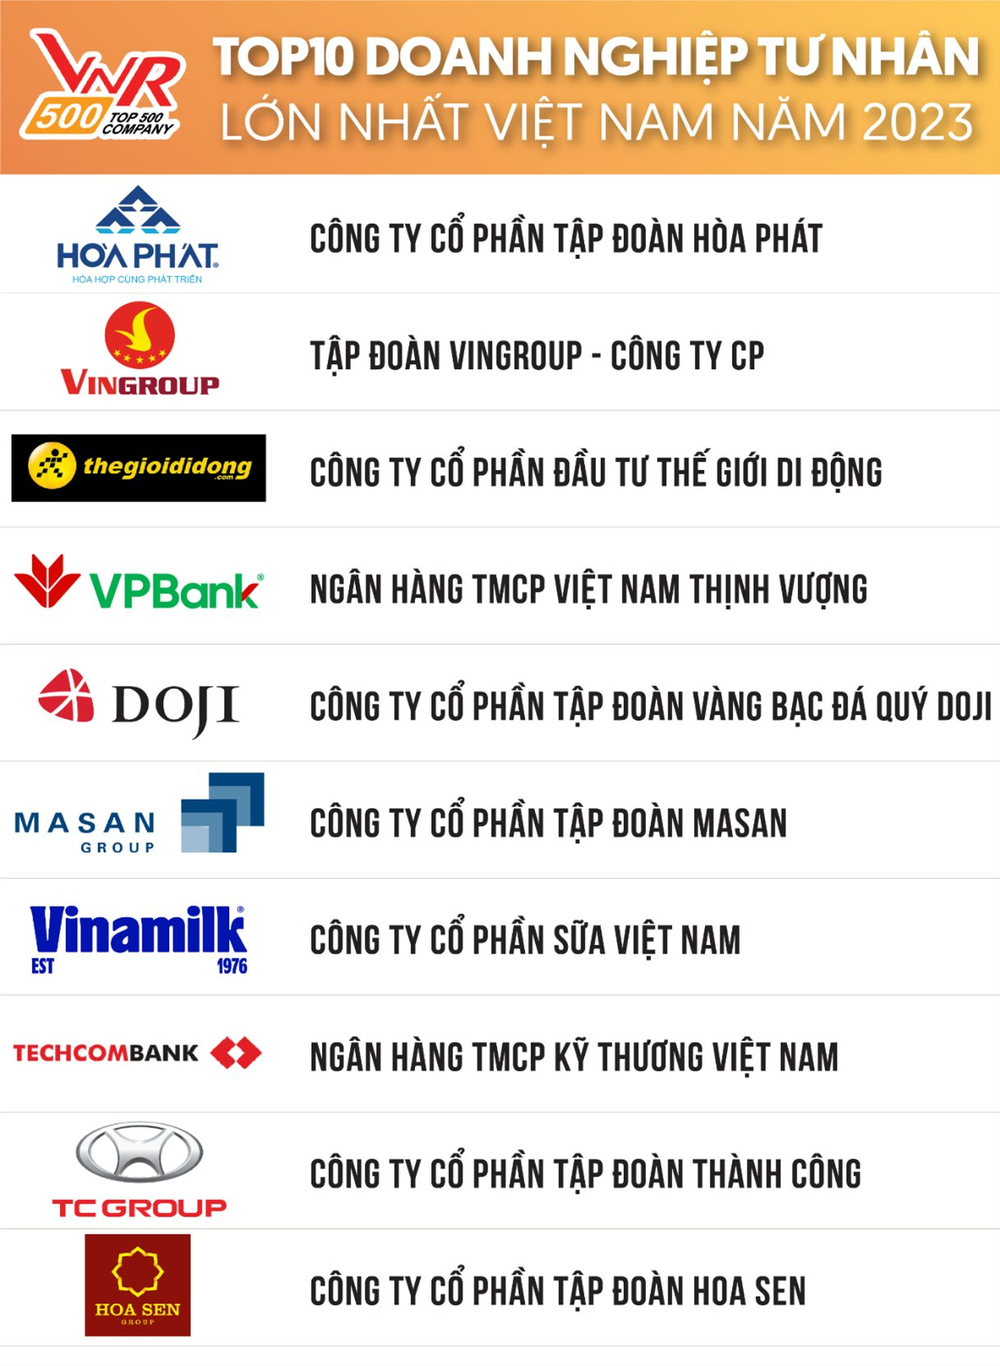 Hòa Phát vẫn đứng trên Vingroup, THACO bay khỏi Top 10 DN tư nhân lớn nhất Việt Nam năm 2023 - Ảnh 2.